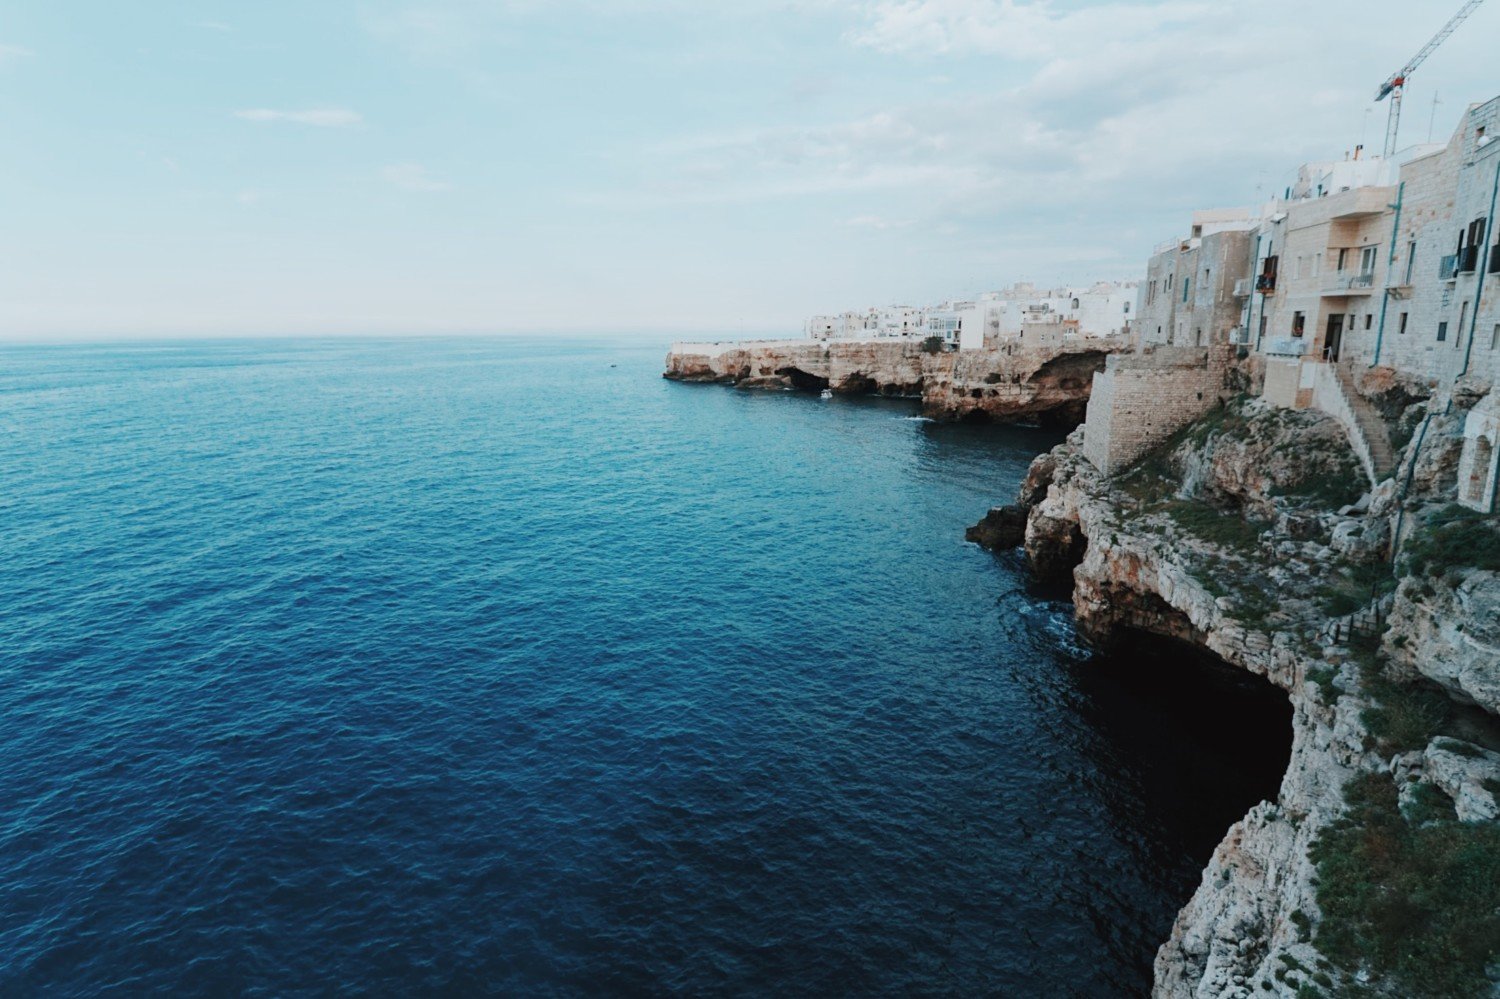 Polignano a Mare - Puglia